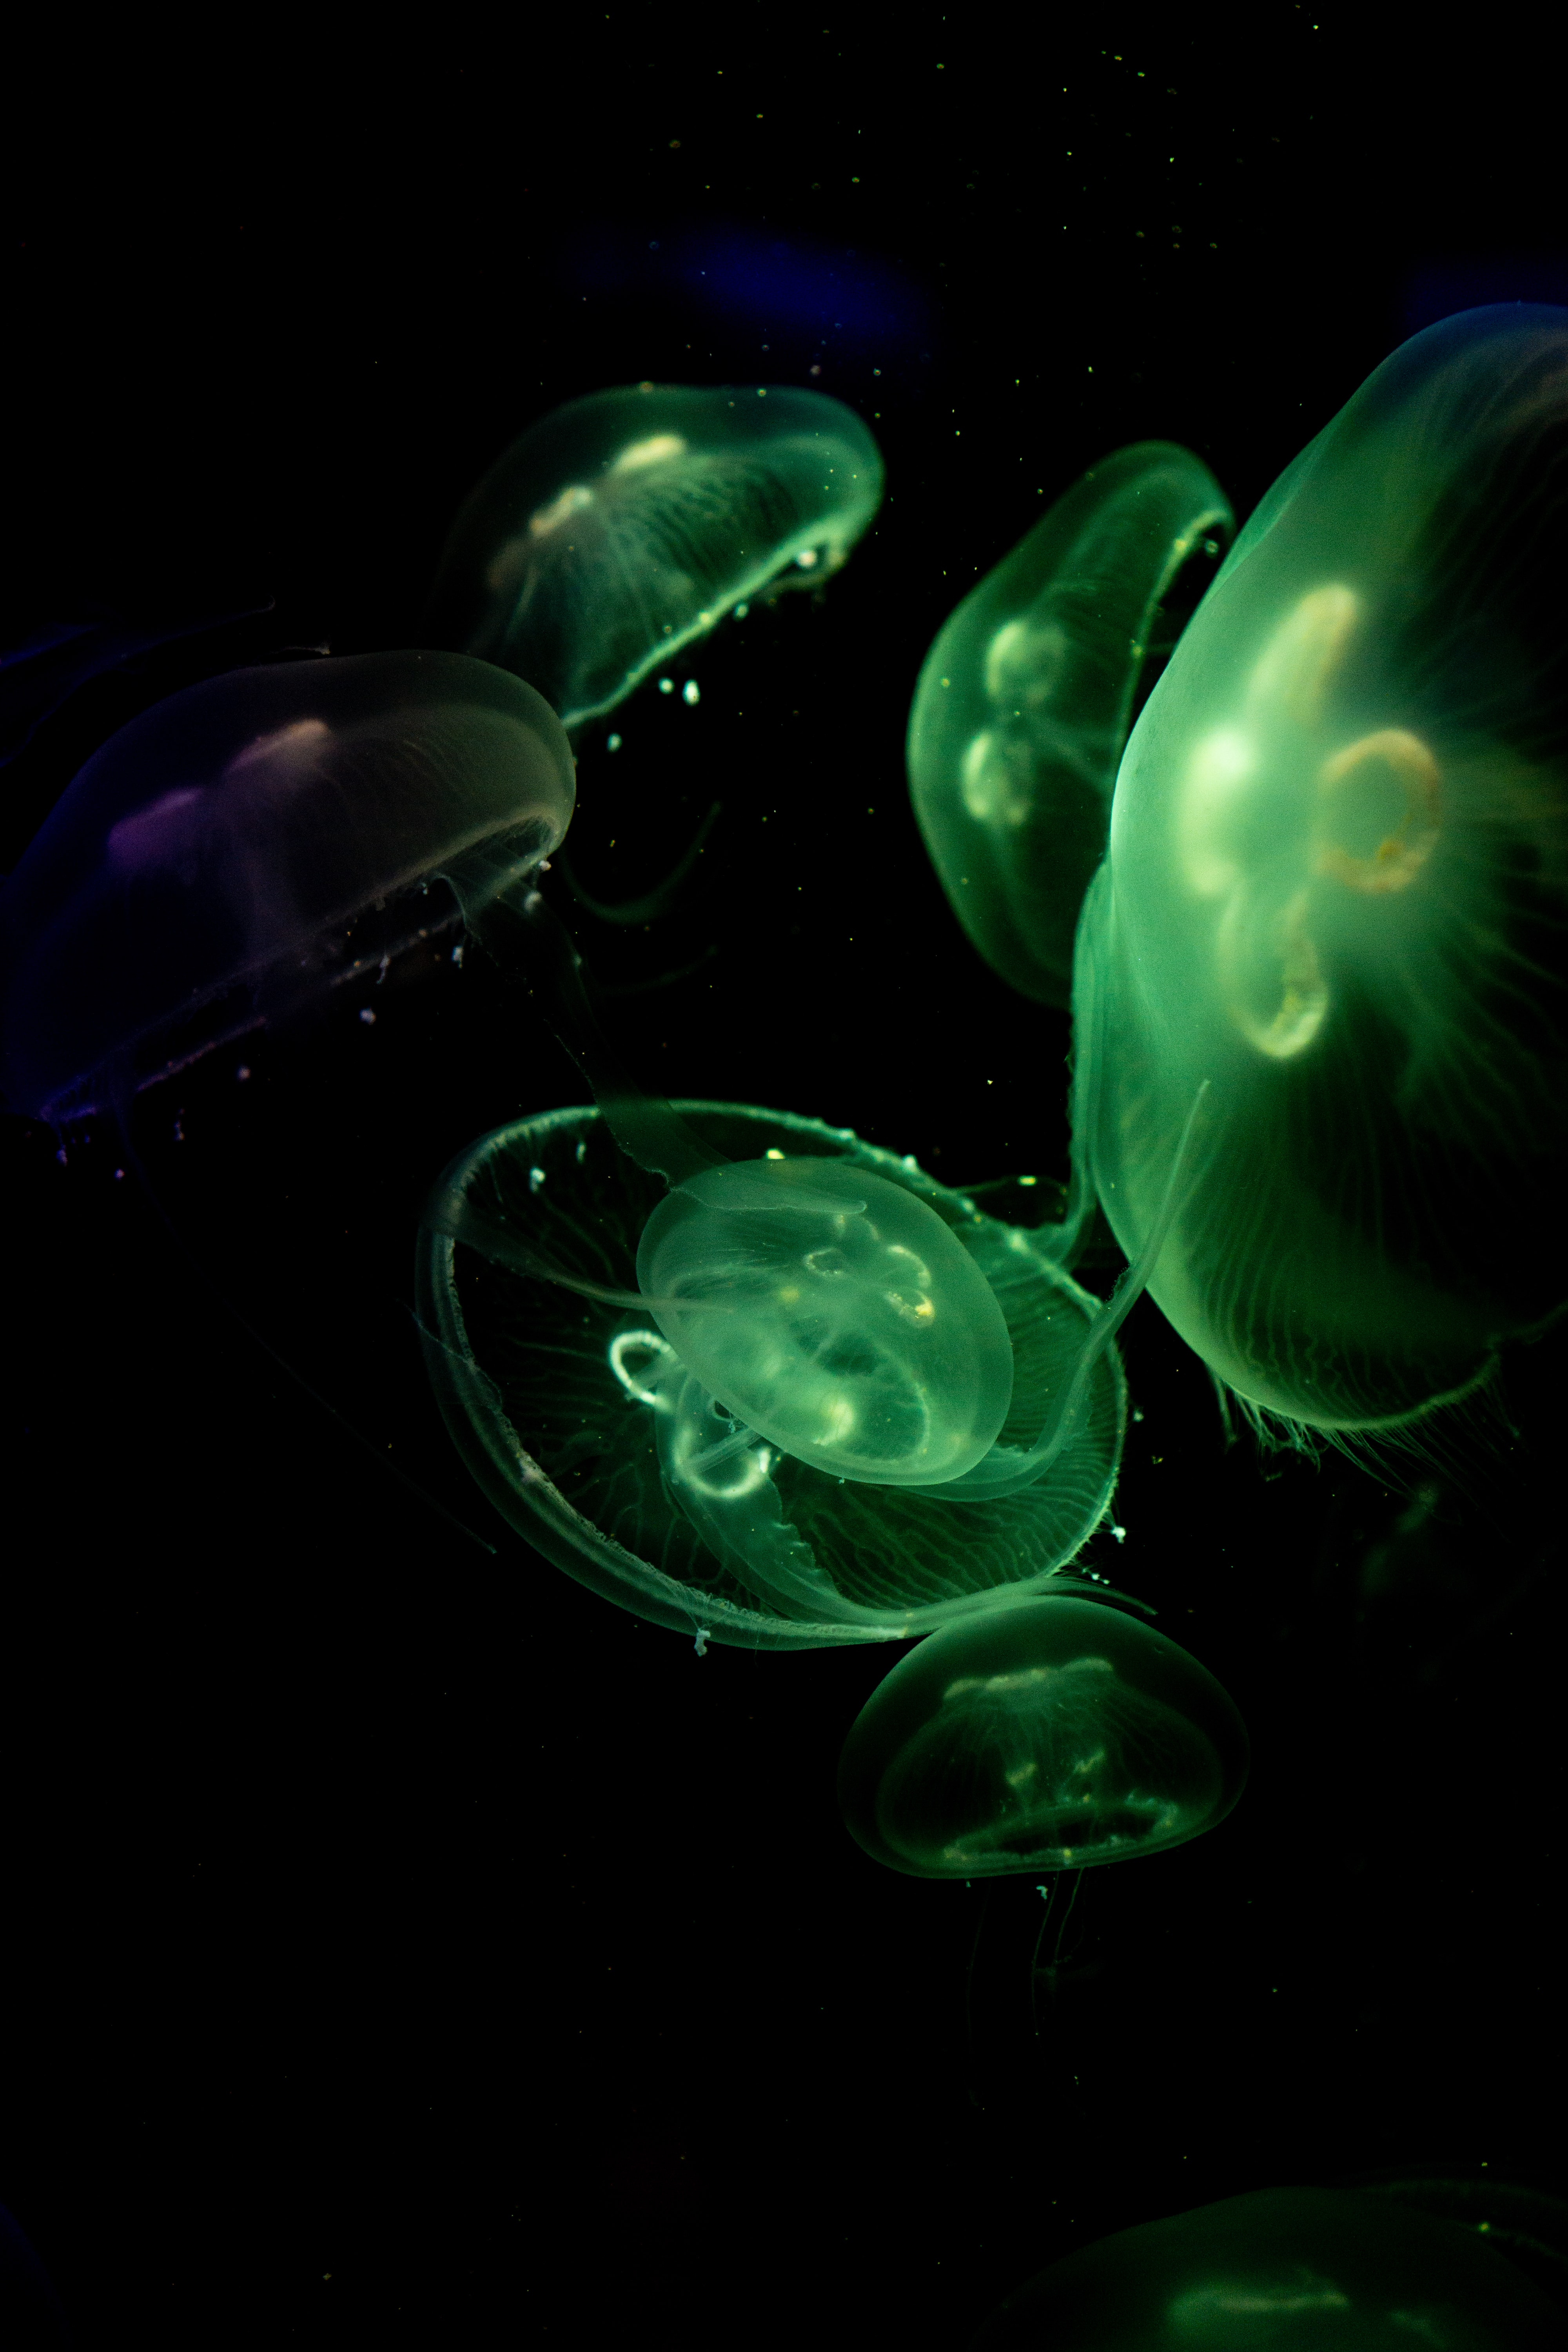 jellyfish, animals, green, dark, glow, under water, underwater